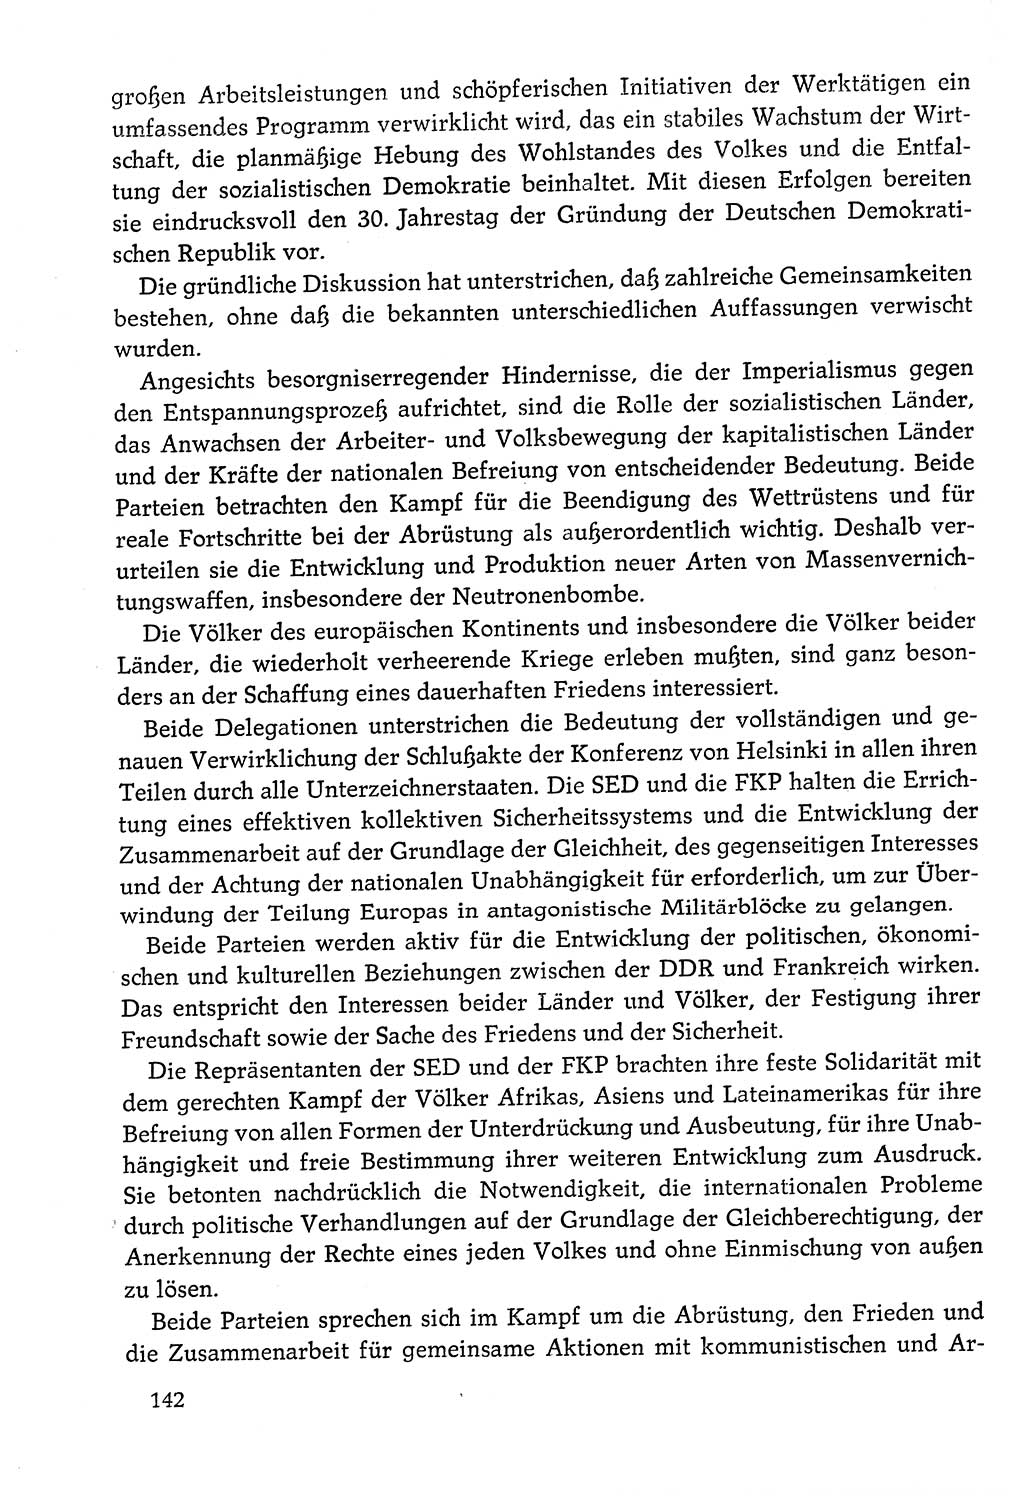 Dokumente der Sozialistischen Einheitspartei Deutschlands (SED) [Deutsche Demokratische Republik (DDR)] 1978-1979, Seite 142 (Dok. SED DDR 1978-1979, S. 142)